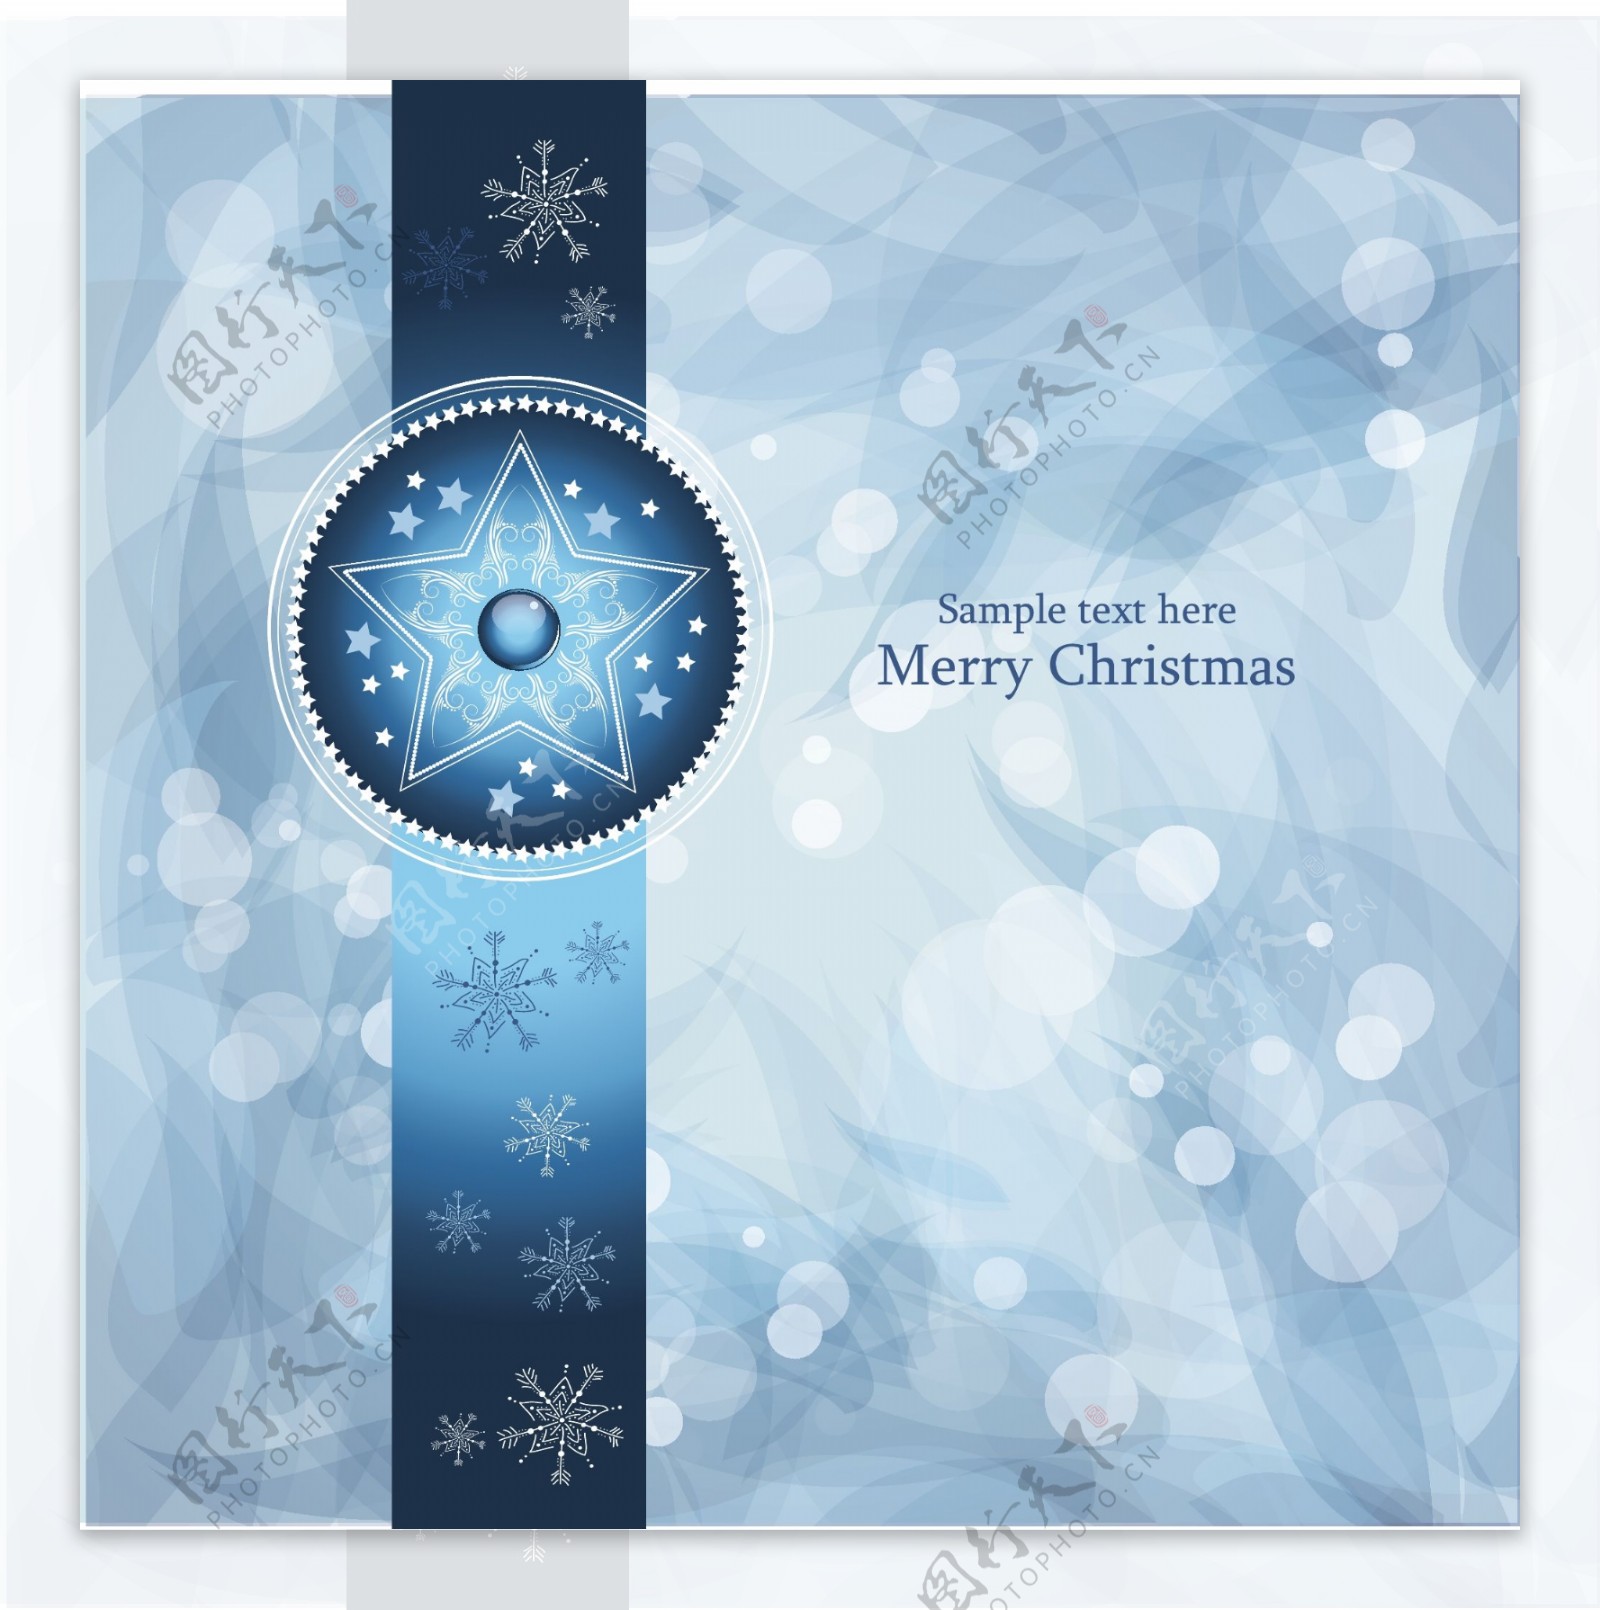 蓝色雪花花纹梦幻圣诞背景图片